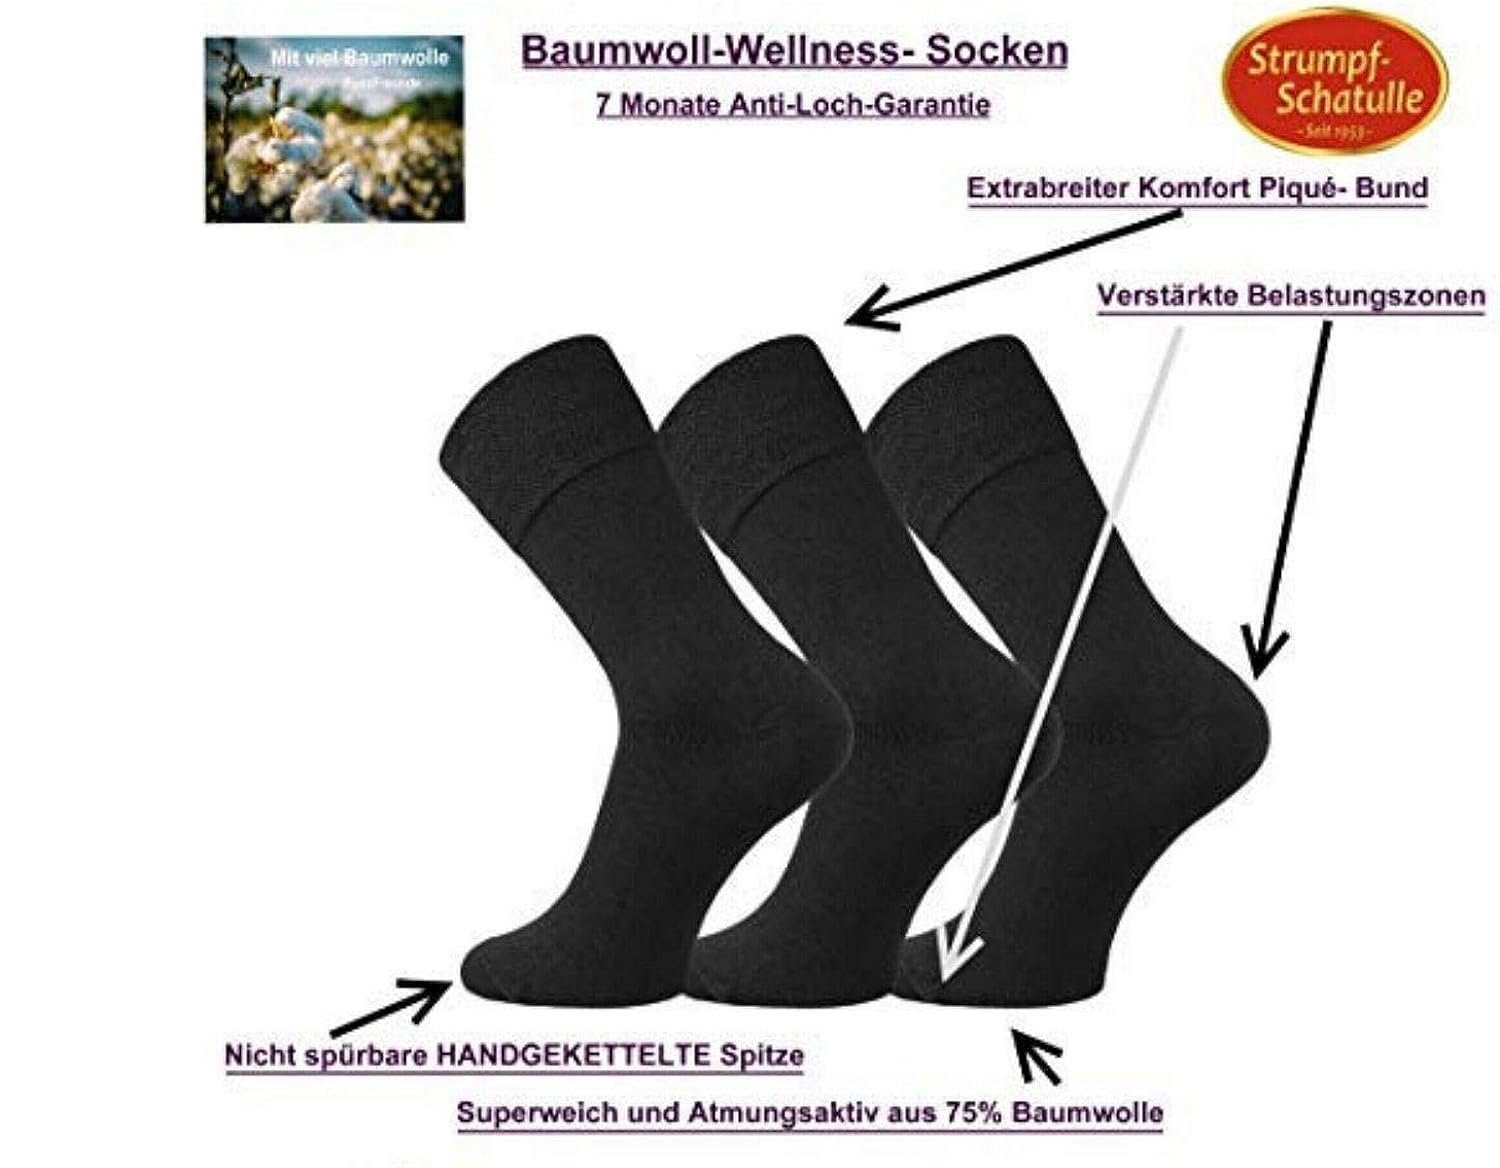 FussFreunde Basicsocken 6 Paar Piqué-Bund Baumwoll-Socken Komfort mit breitem Grau